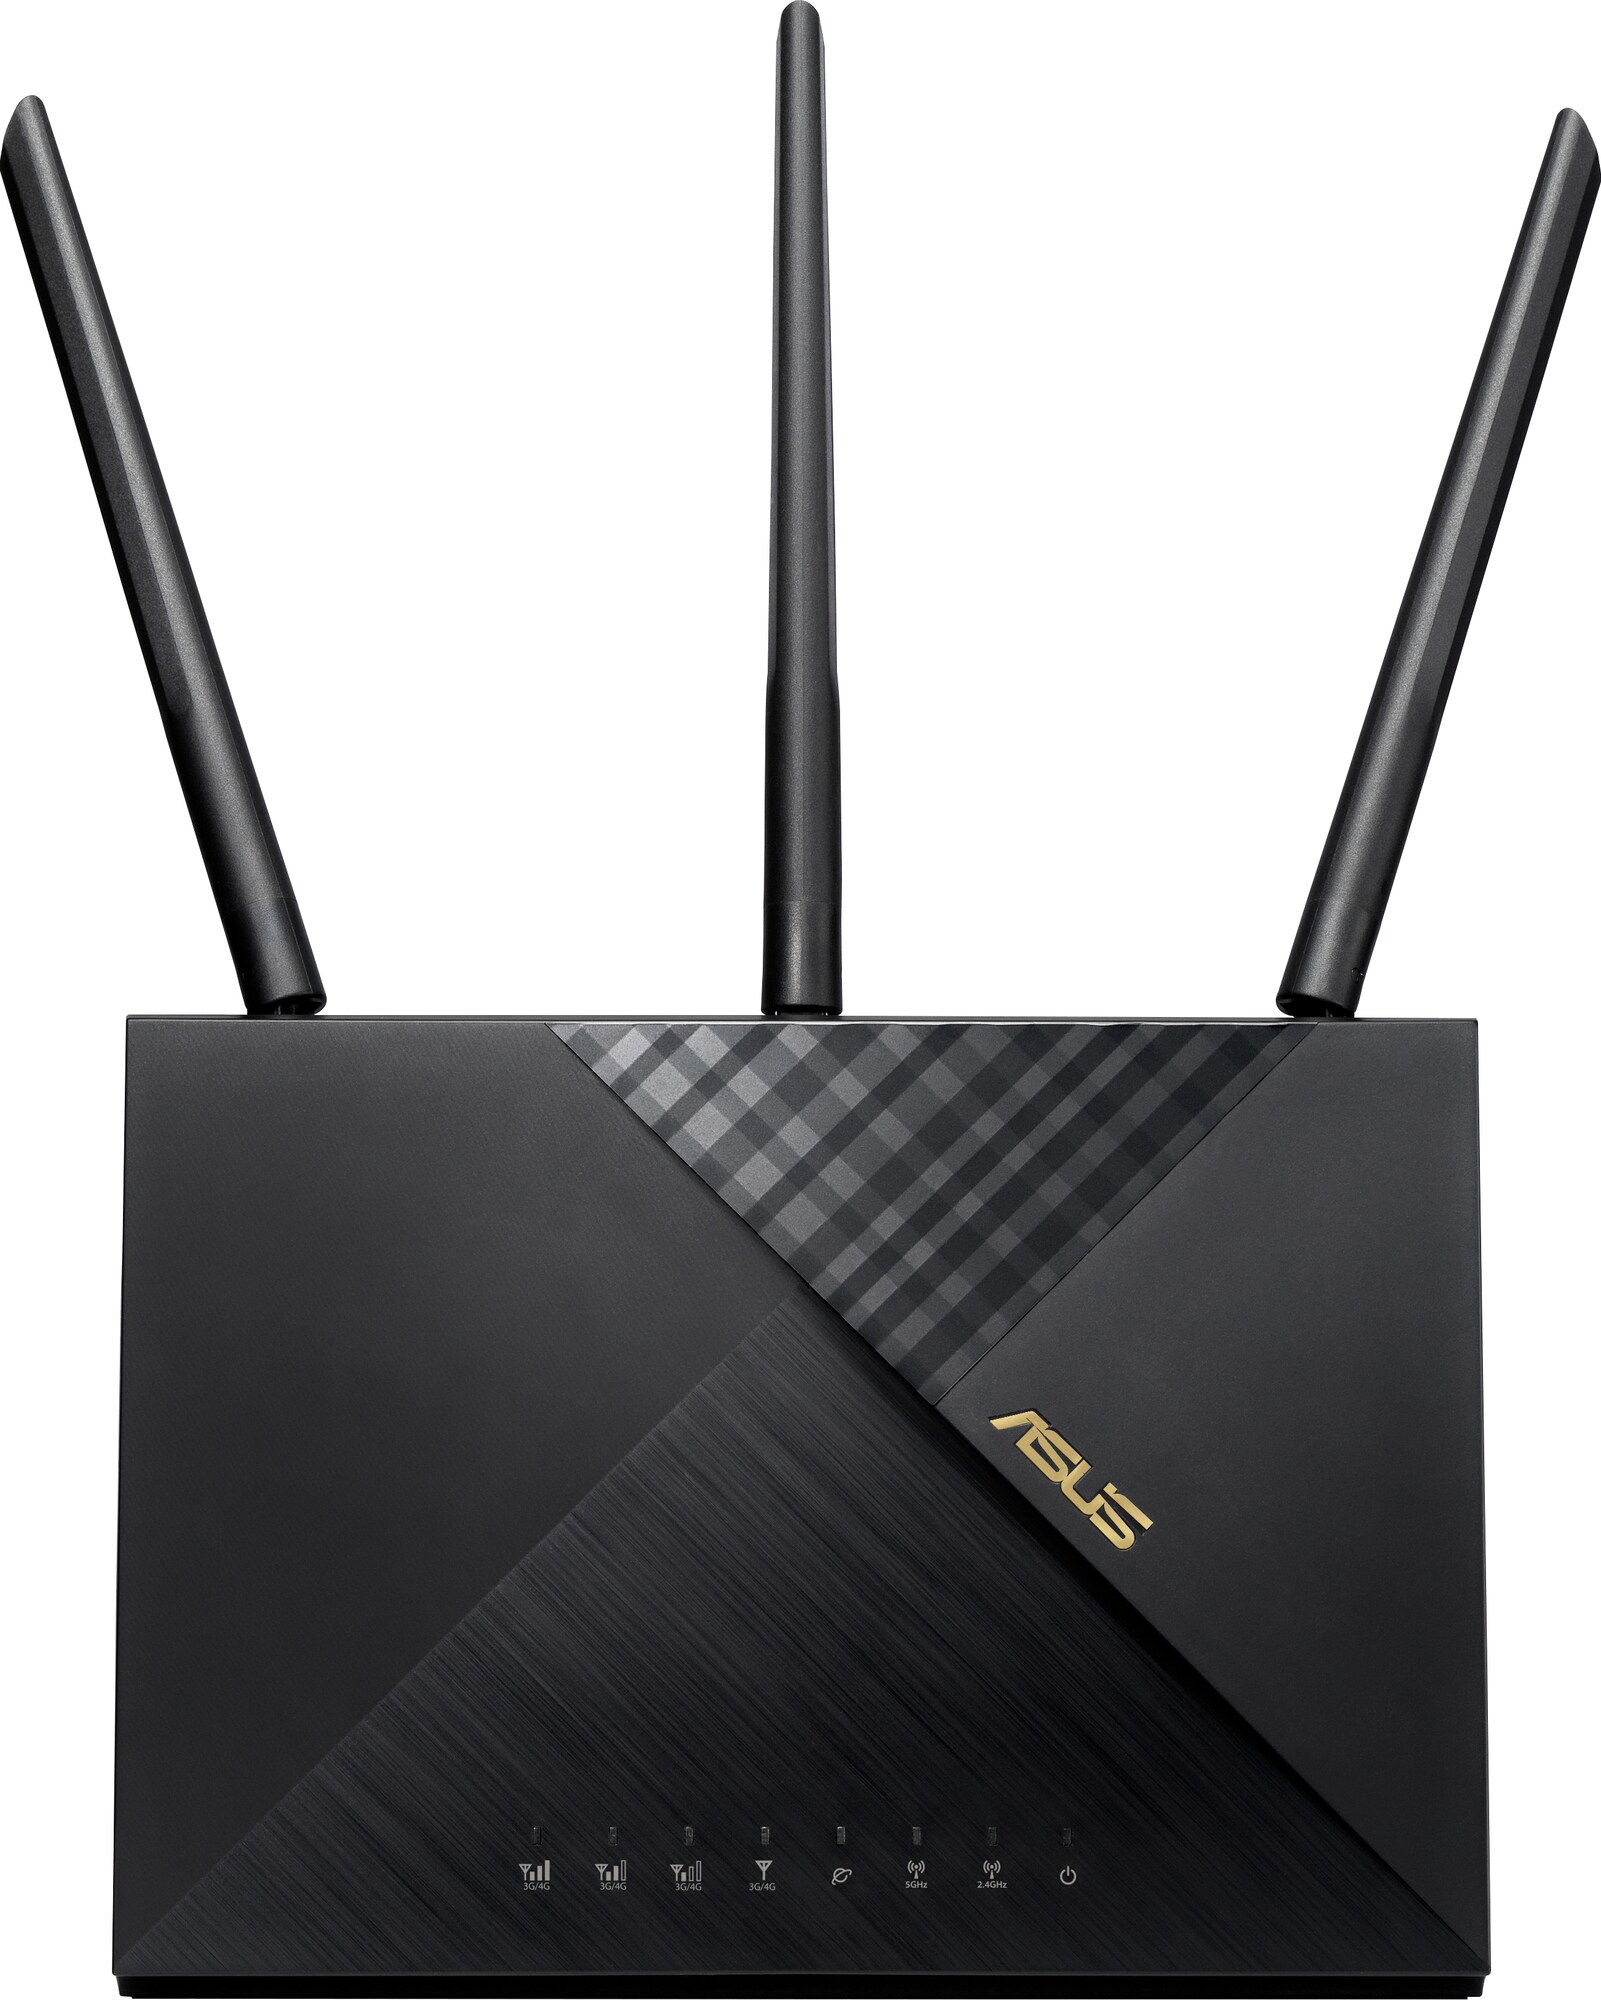 Asus 4G-AX56 router | Elgiganten